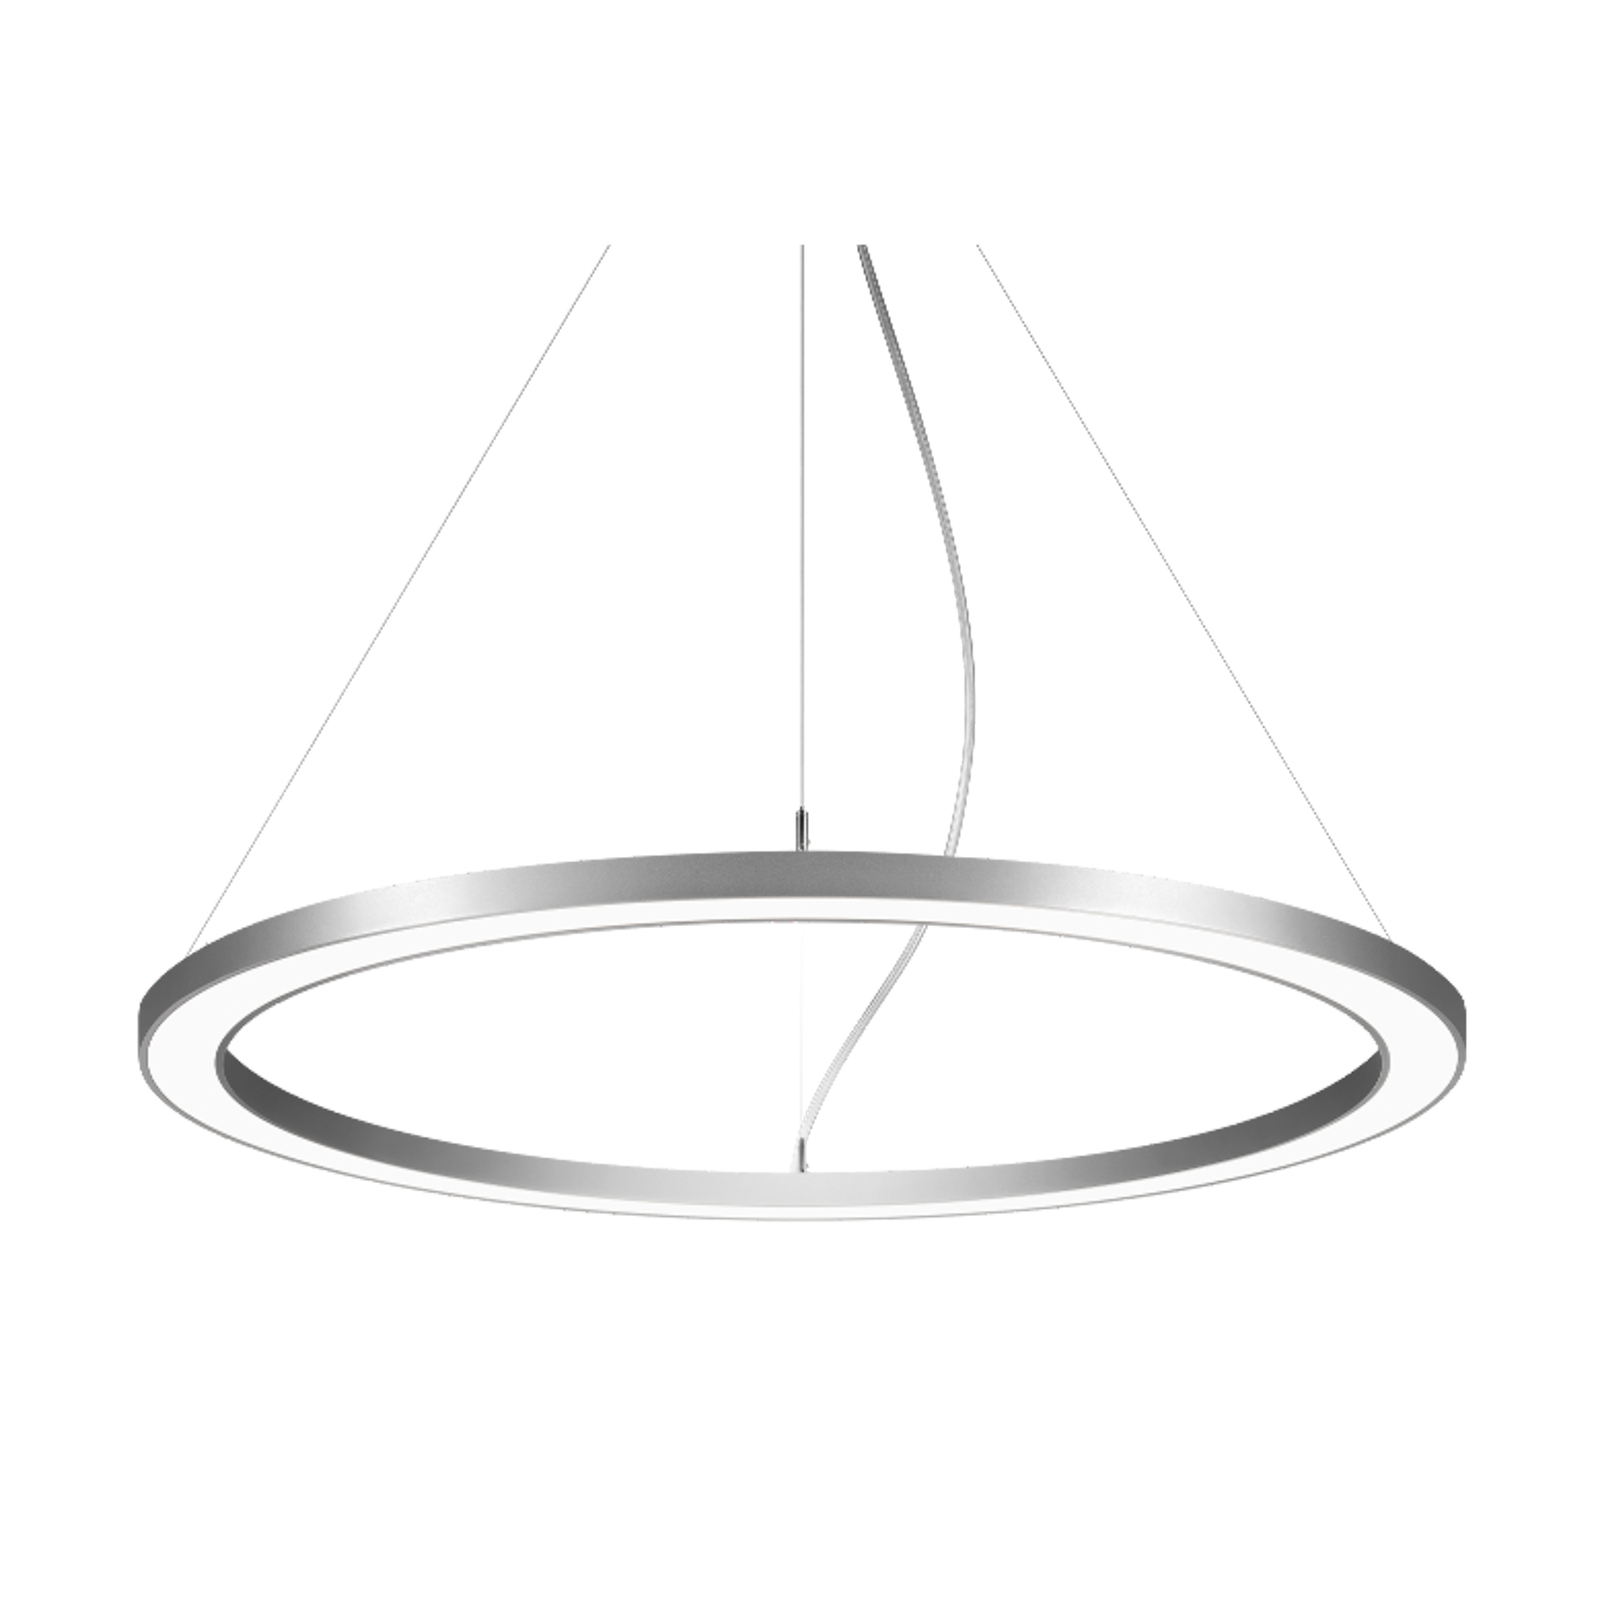 BRUMBERG Biro Circle Ring 3.5 izravni Ø 60 cm uključeno/isključeno srebro